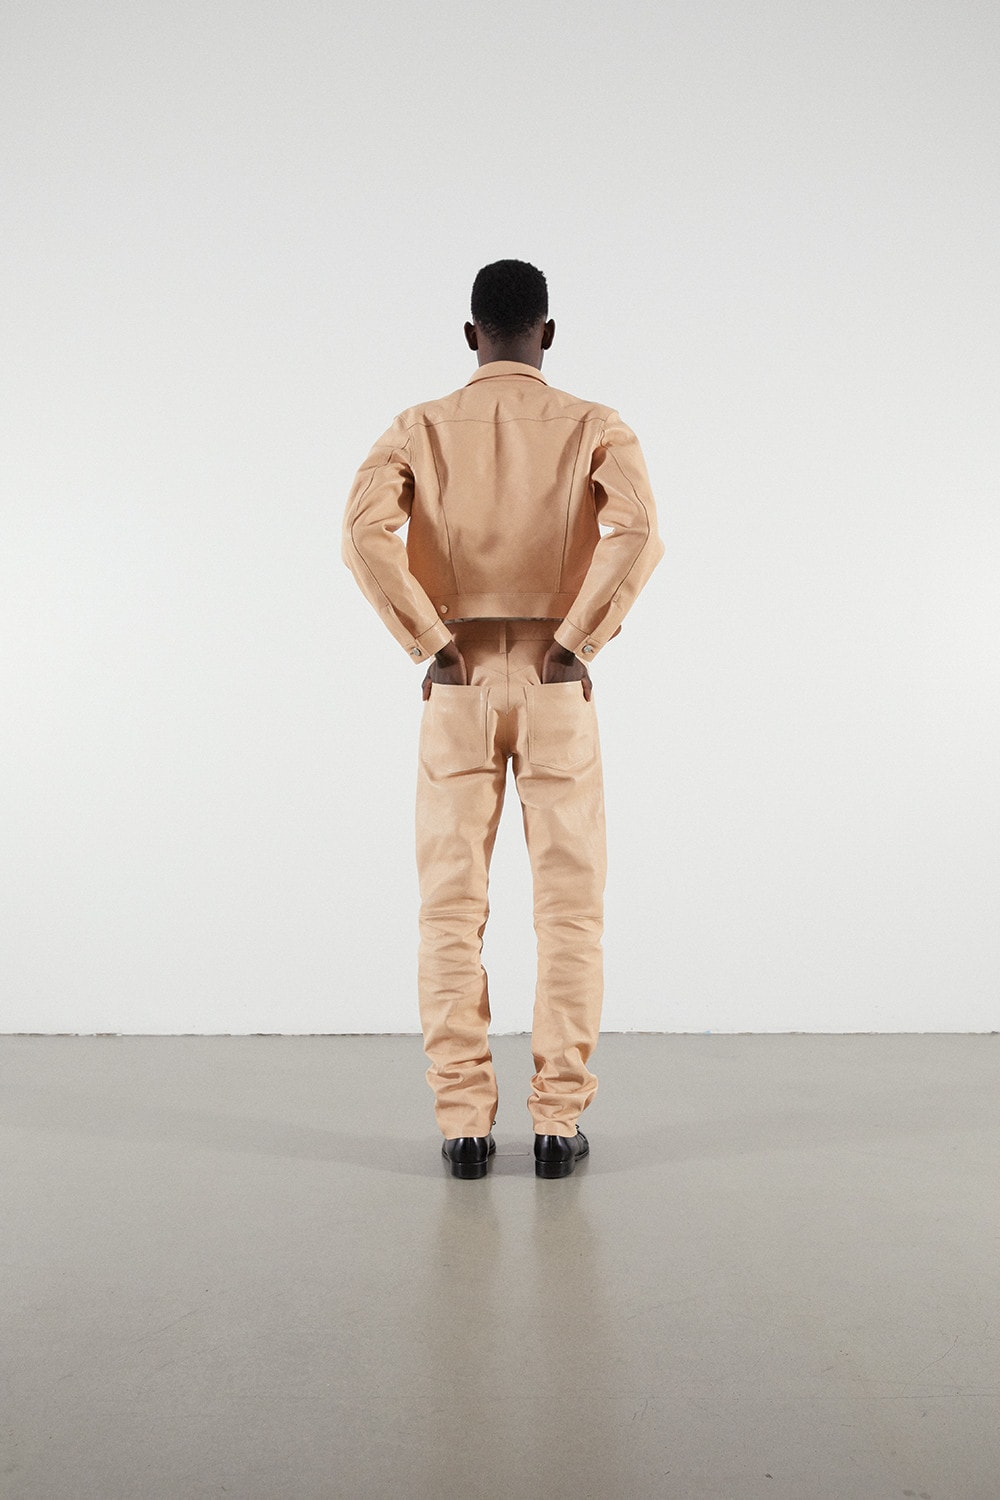 Helmut Lang Jeans Under Construction Capsule Lookbook Leather Jacket Pants Tan